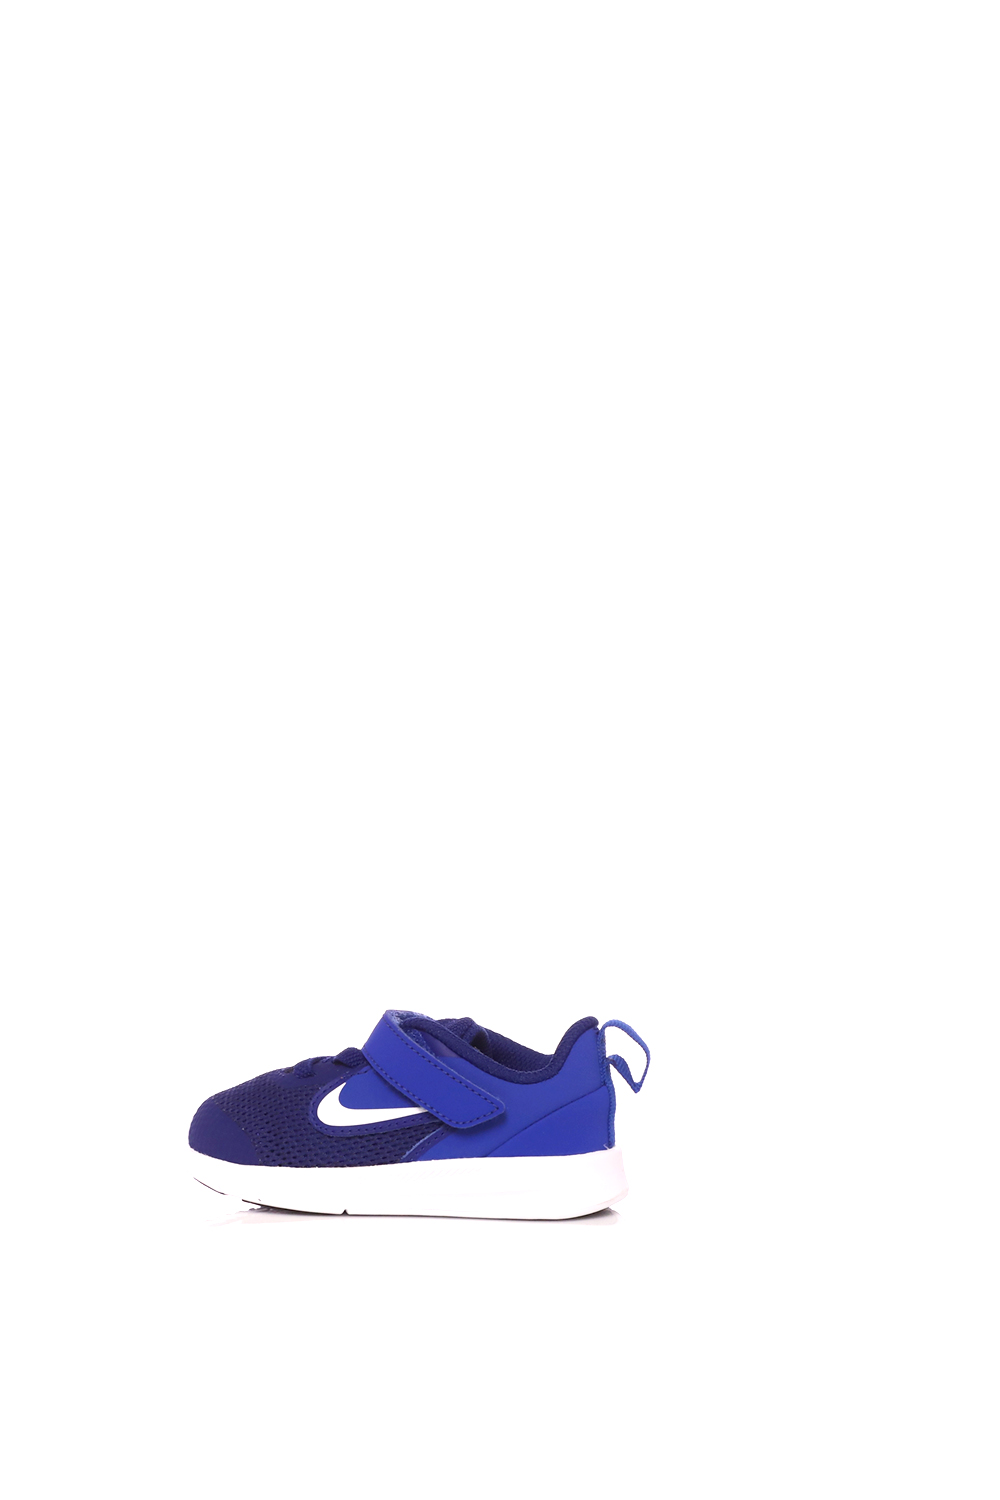 Παιδικά/Baby/Παπούτσια/Αθλητικά NIKE - Βρεφικά αθλητικά παπούτσια NIKE DOWNSHIFTER 9 μπλε